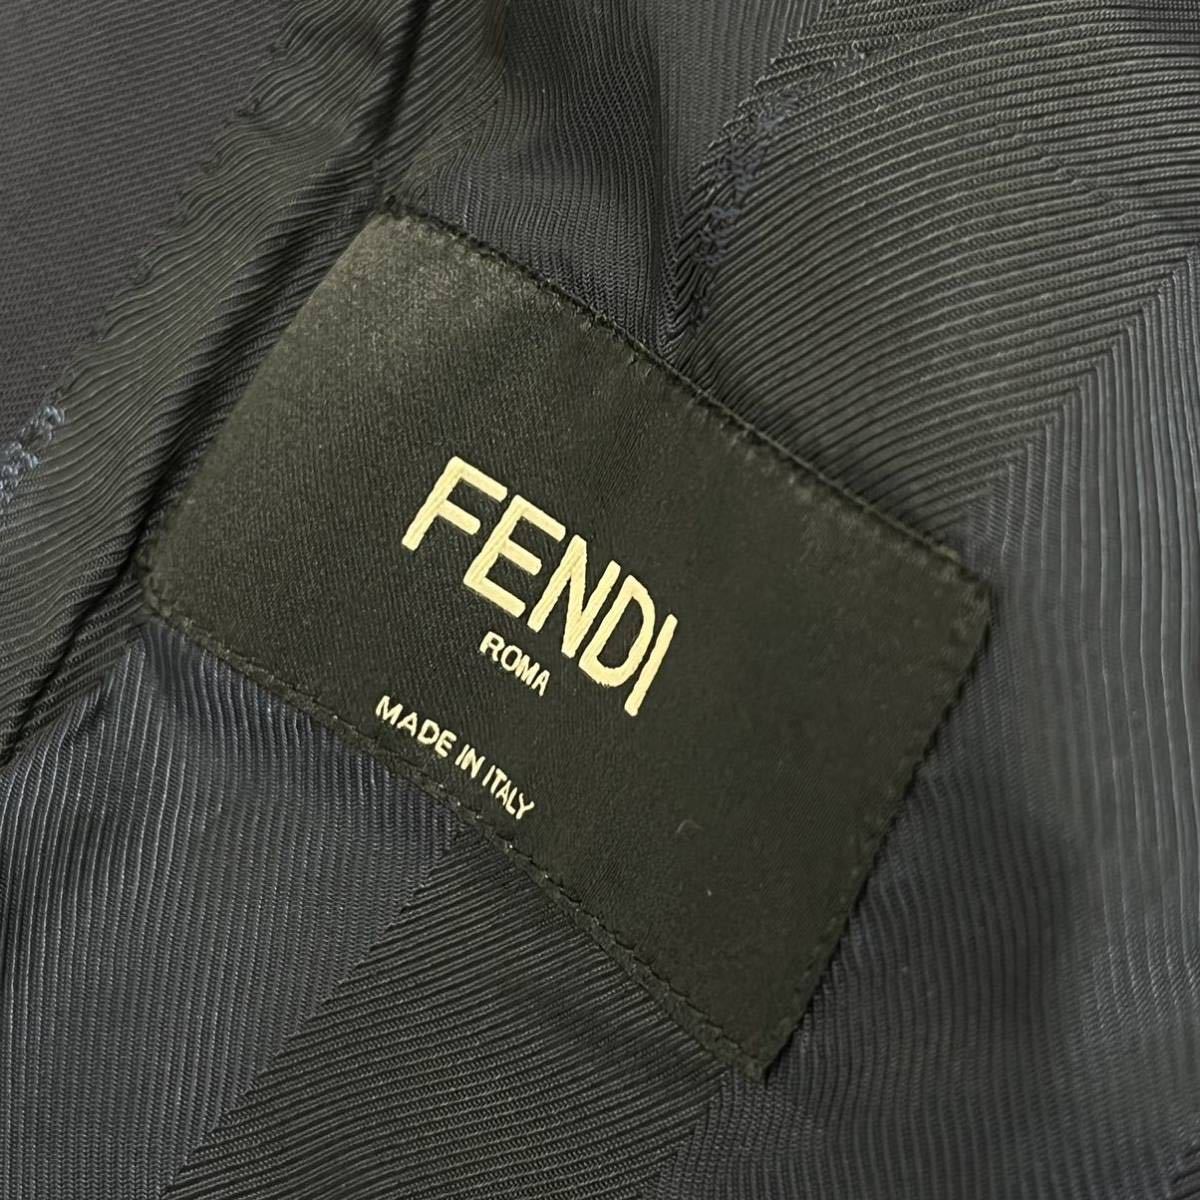 PayPayフリマ｜FENDI フェンディ 2016年モデル ウール100% 2B シングルテーラードジャケット＆スラックスパンツ セットアップスーツ